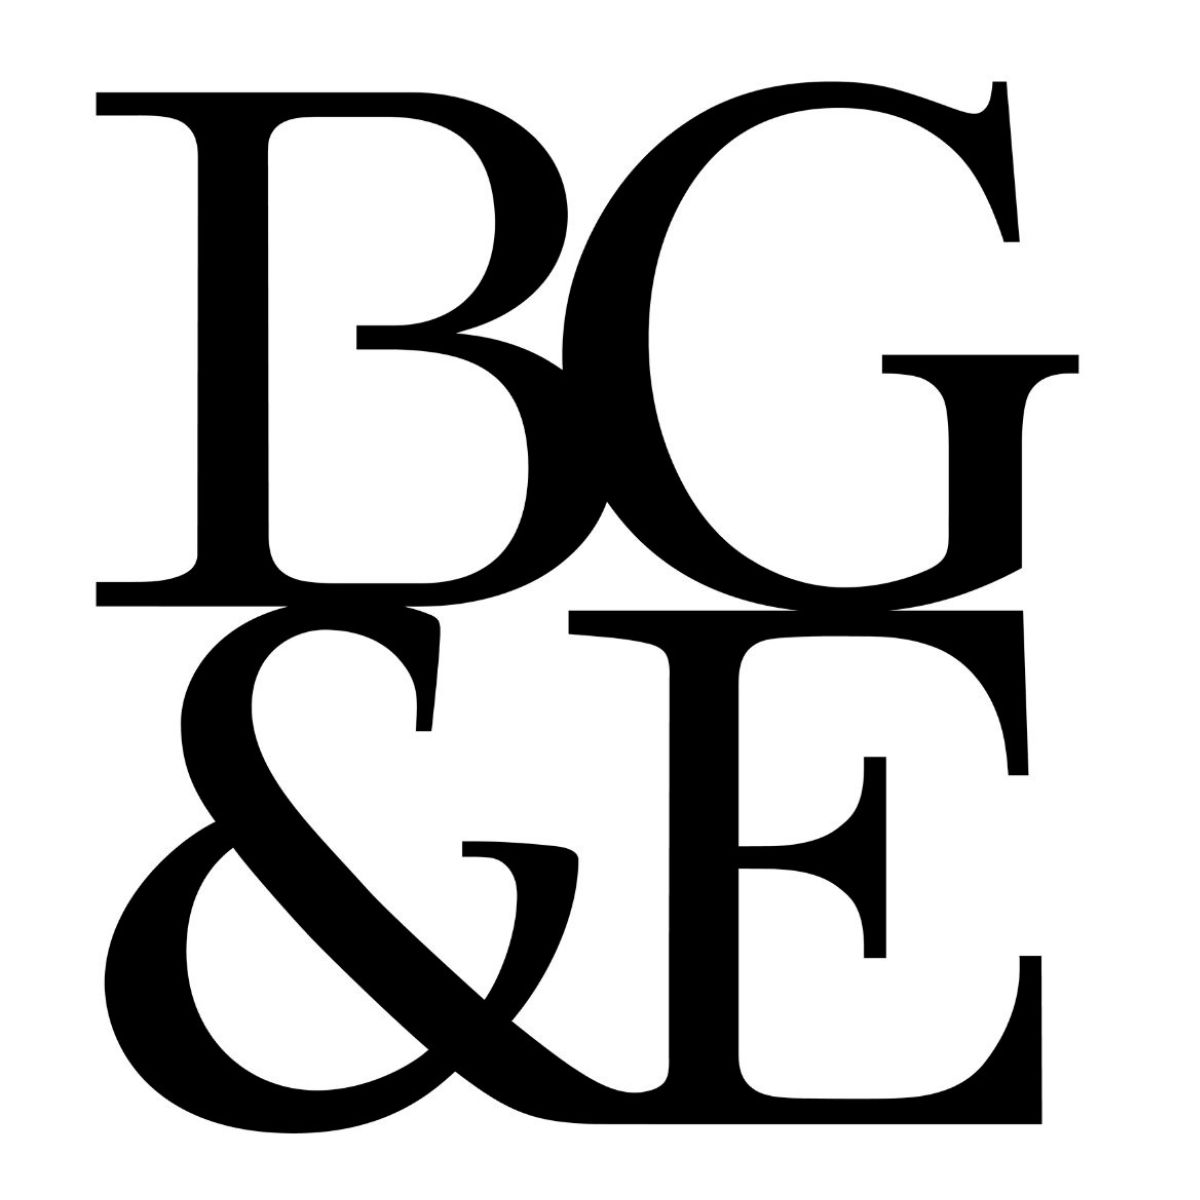 BG&E Pty Limited